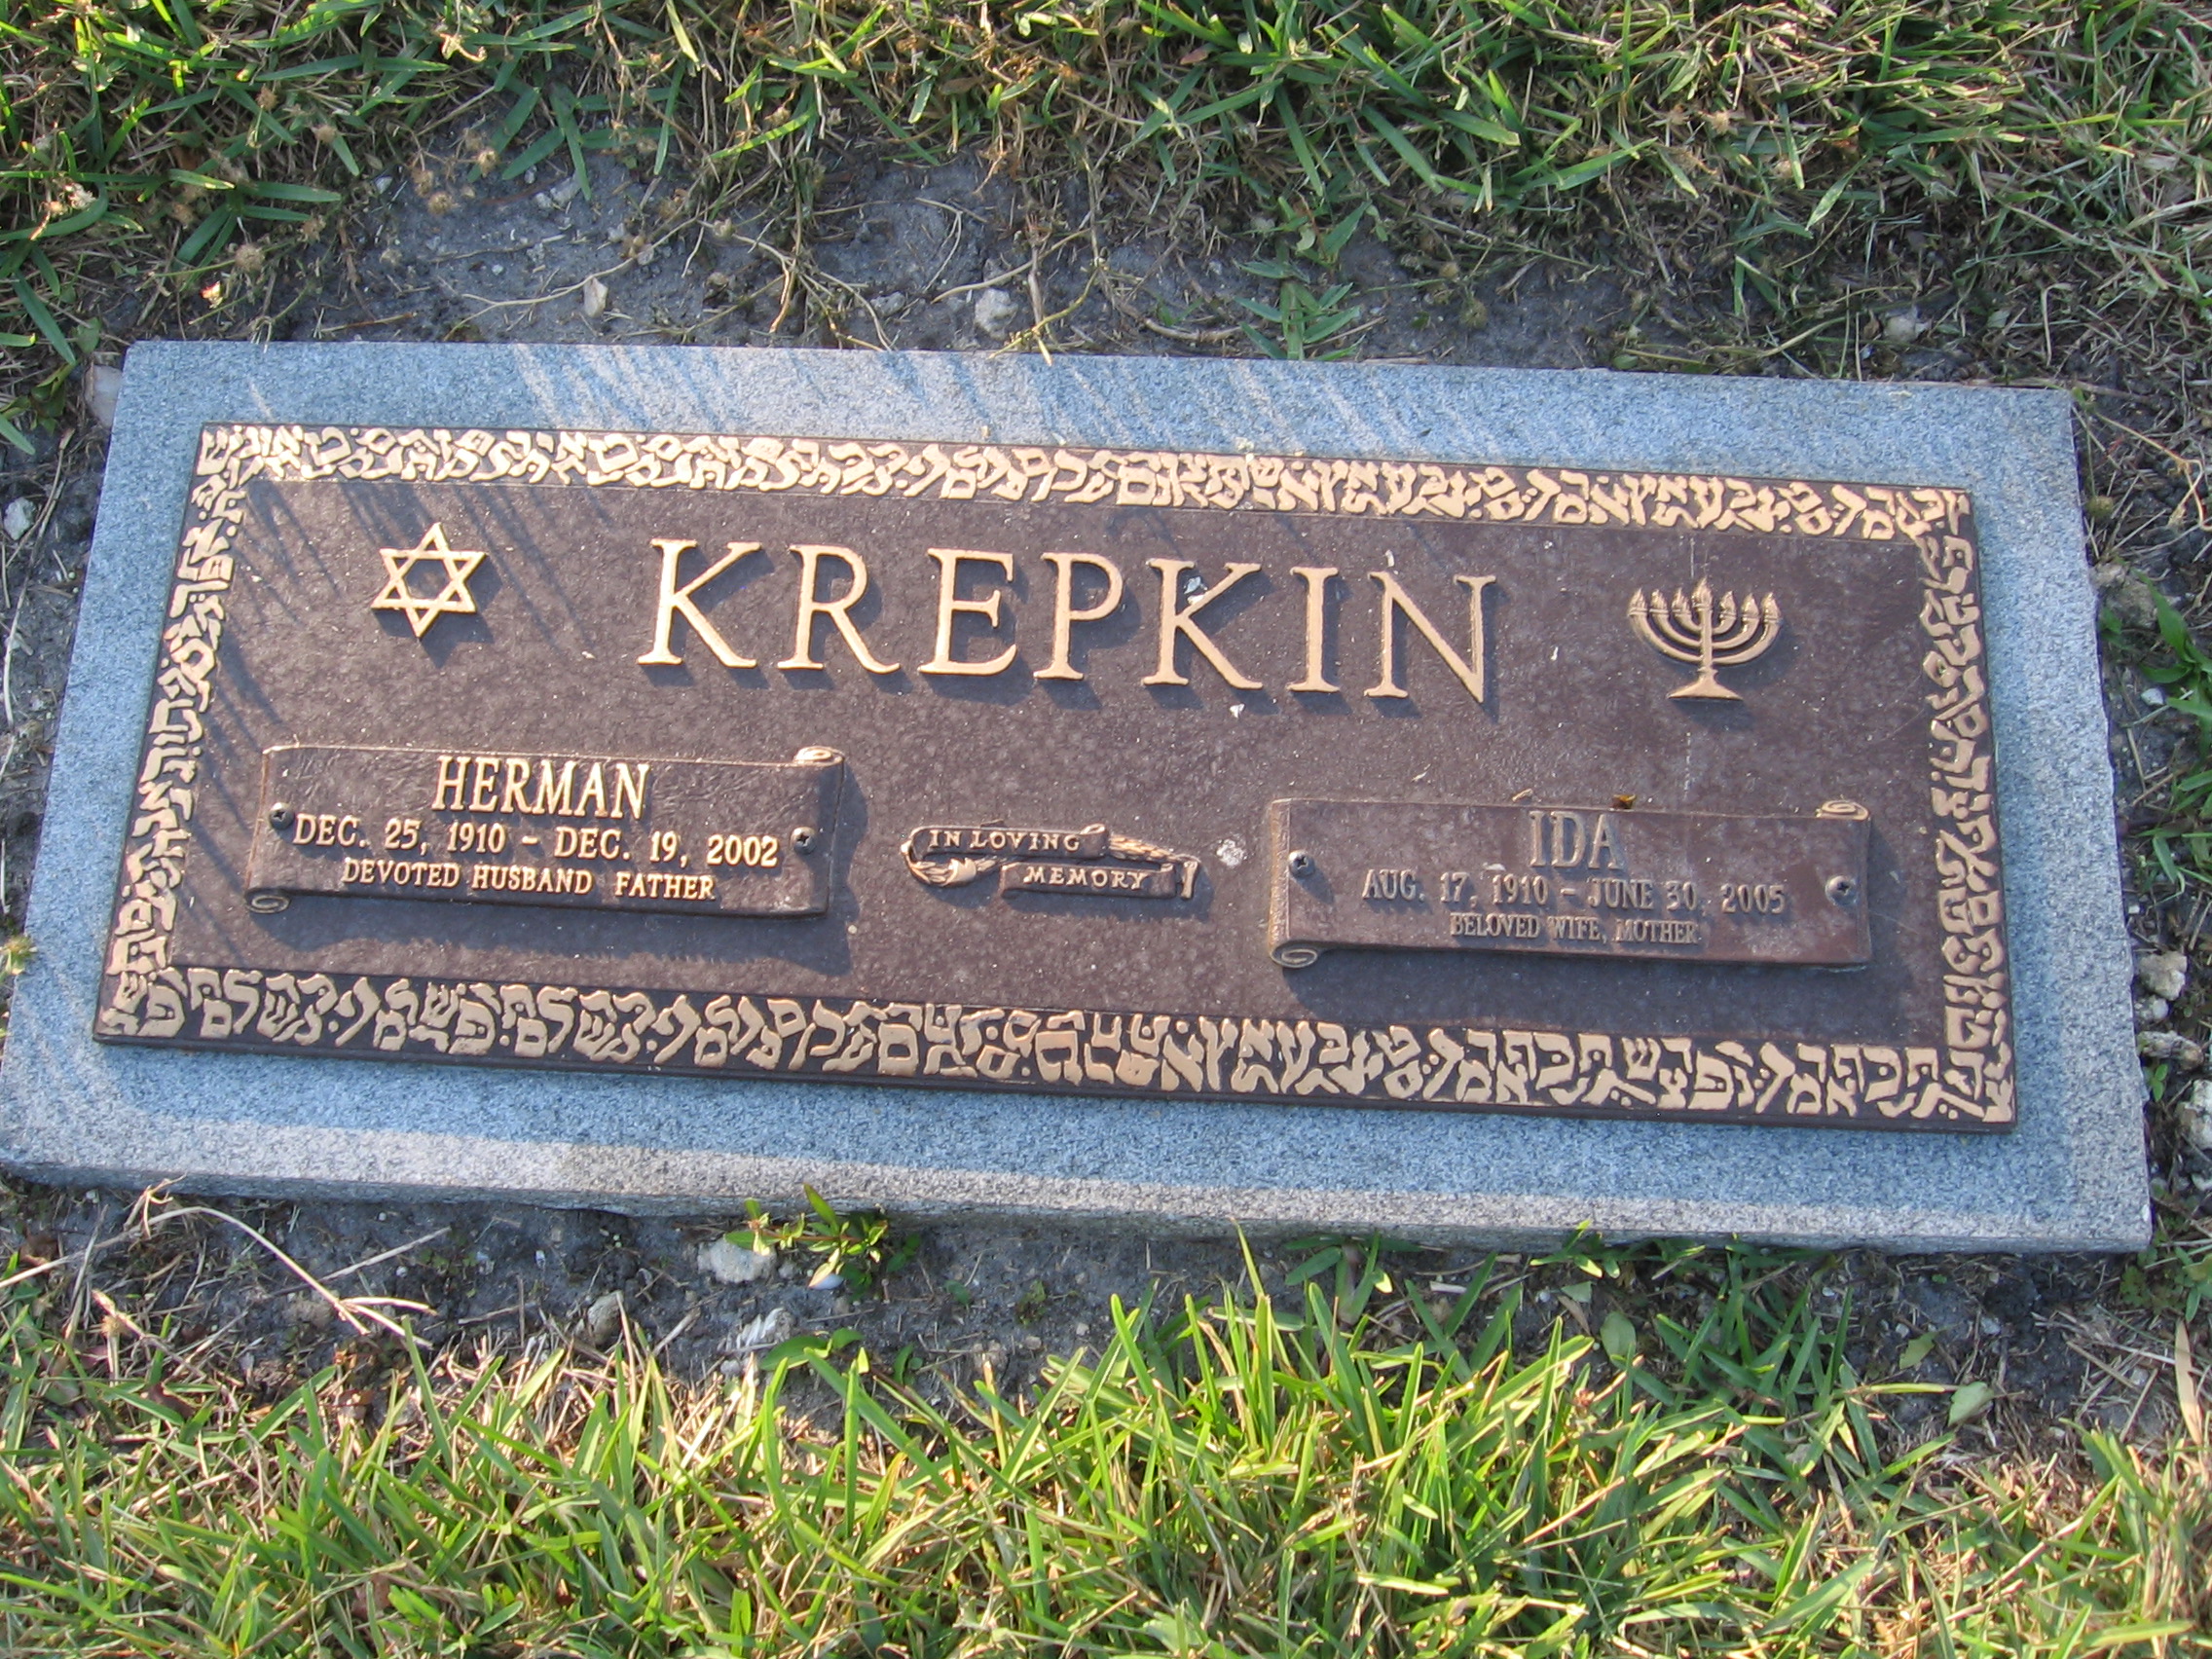 Herman Krepkin